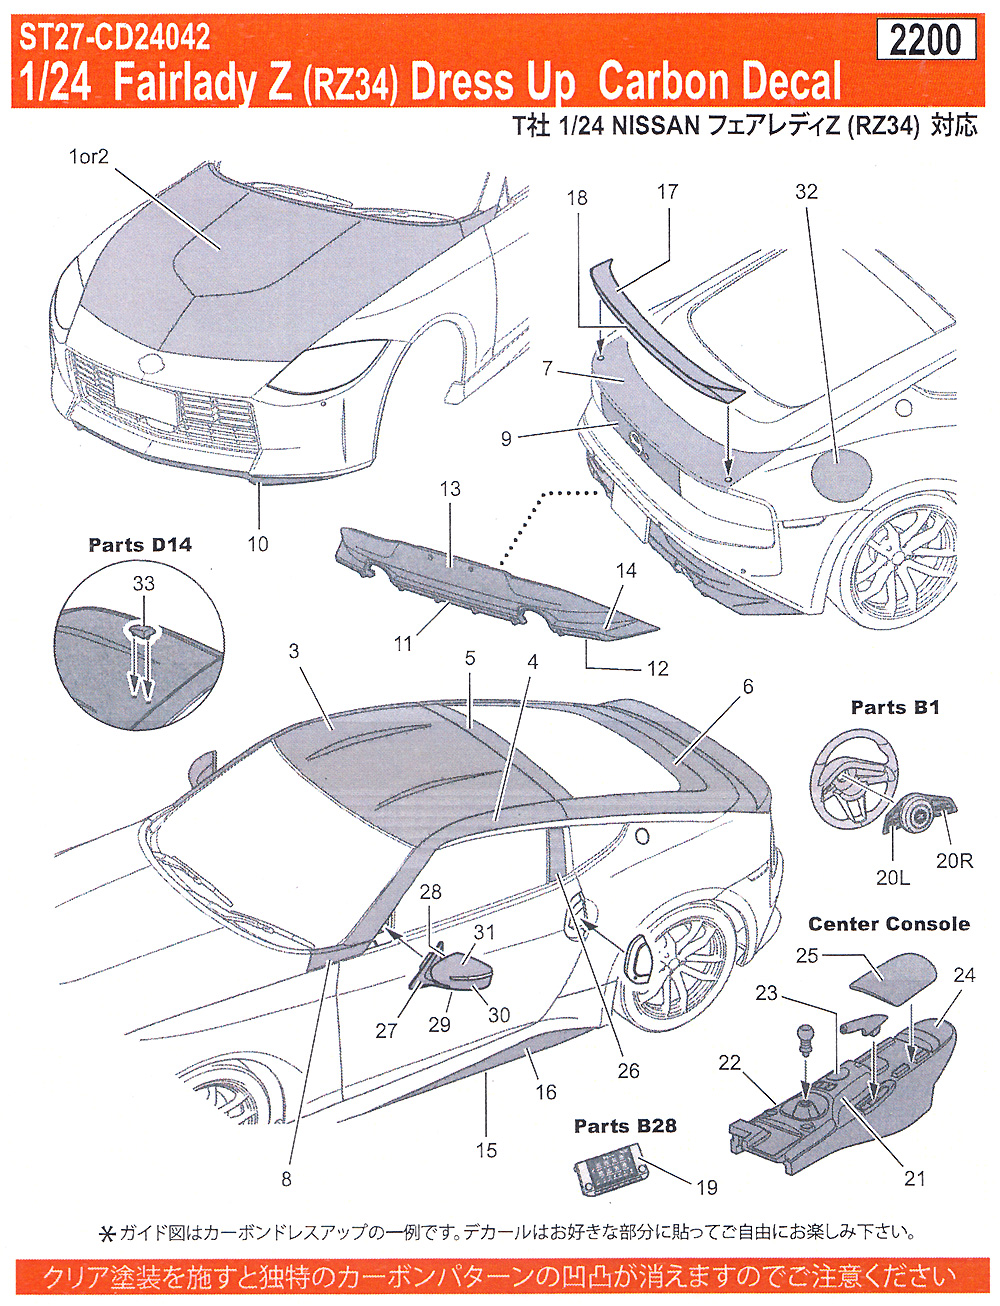 フェアレディ Z (RZ34) ドレスアップ カーボンデカール デカール (スタジオ27 ツーリングカー/GTカー カーボンデカール No.CD24042) 商品画像_1